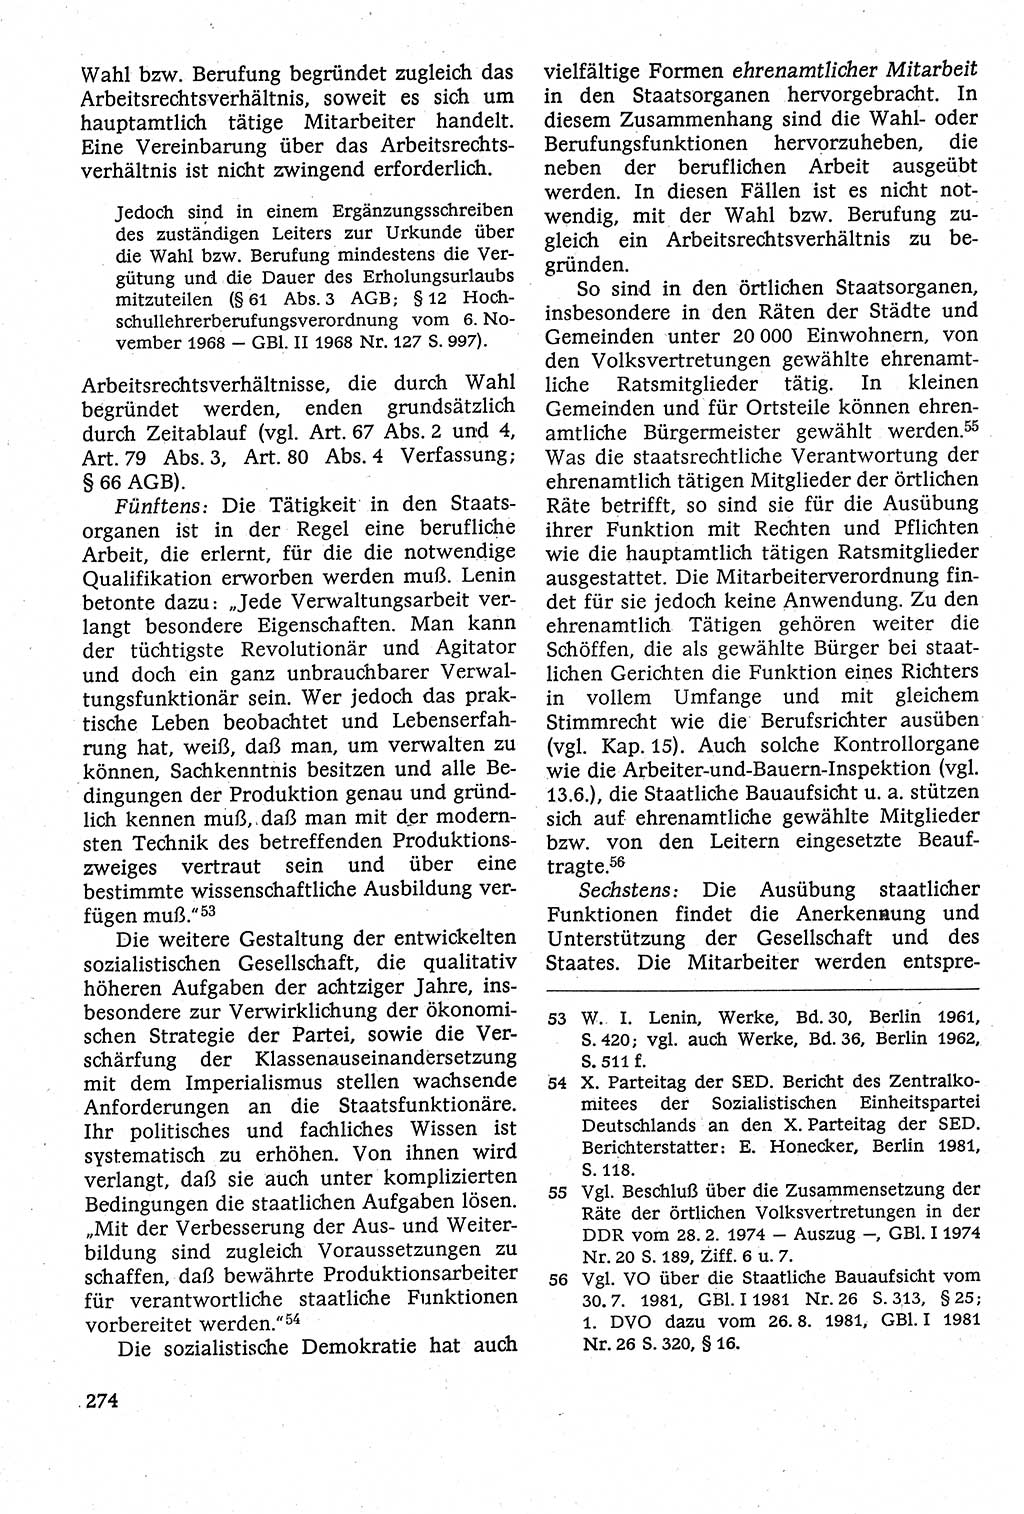 Staatsrecht der DDR [Deutsche Demokratische Republik (DDR)], Lehrbuch 1984, Seite 274 (St.-R. DDR Lb. 1984, S. 274)